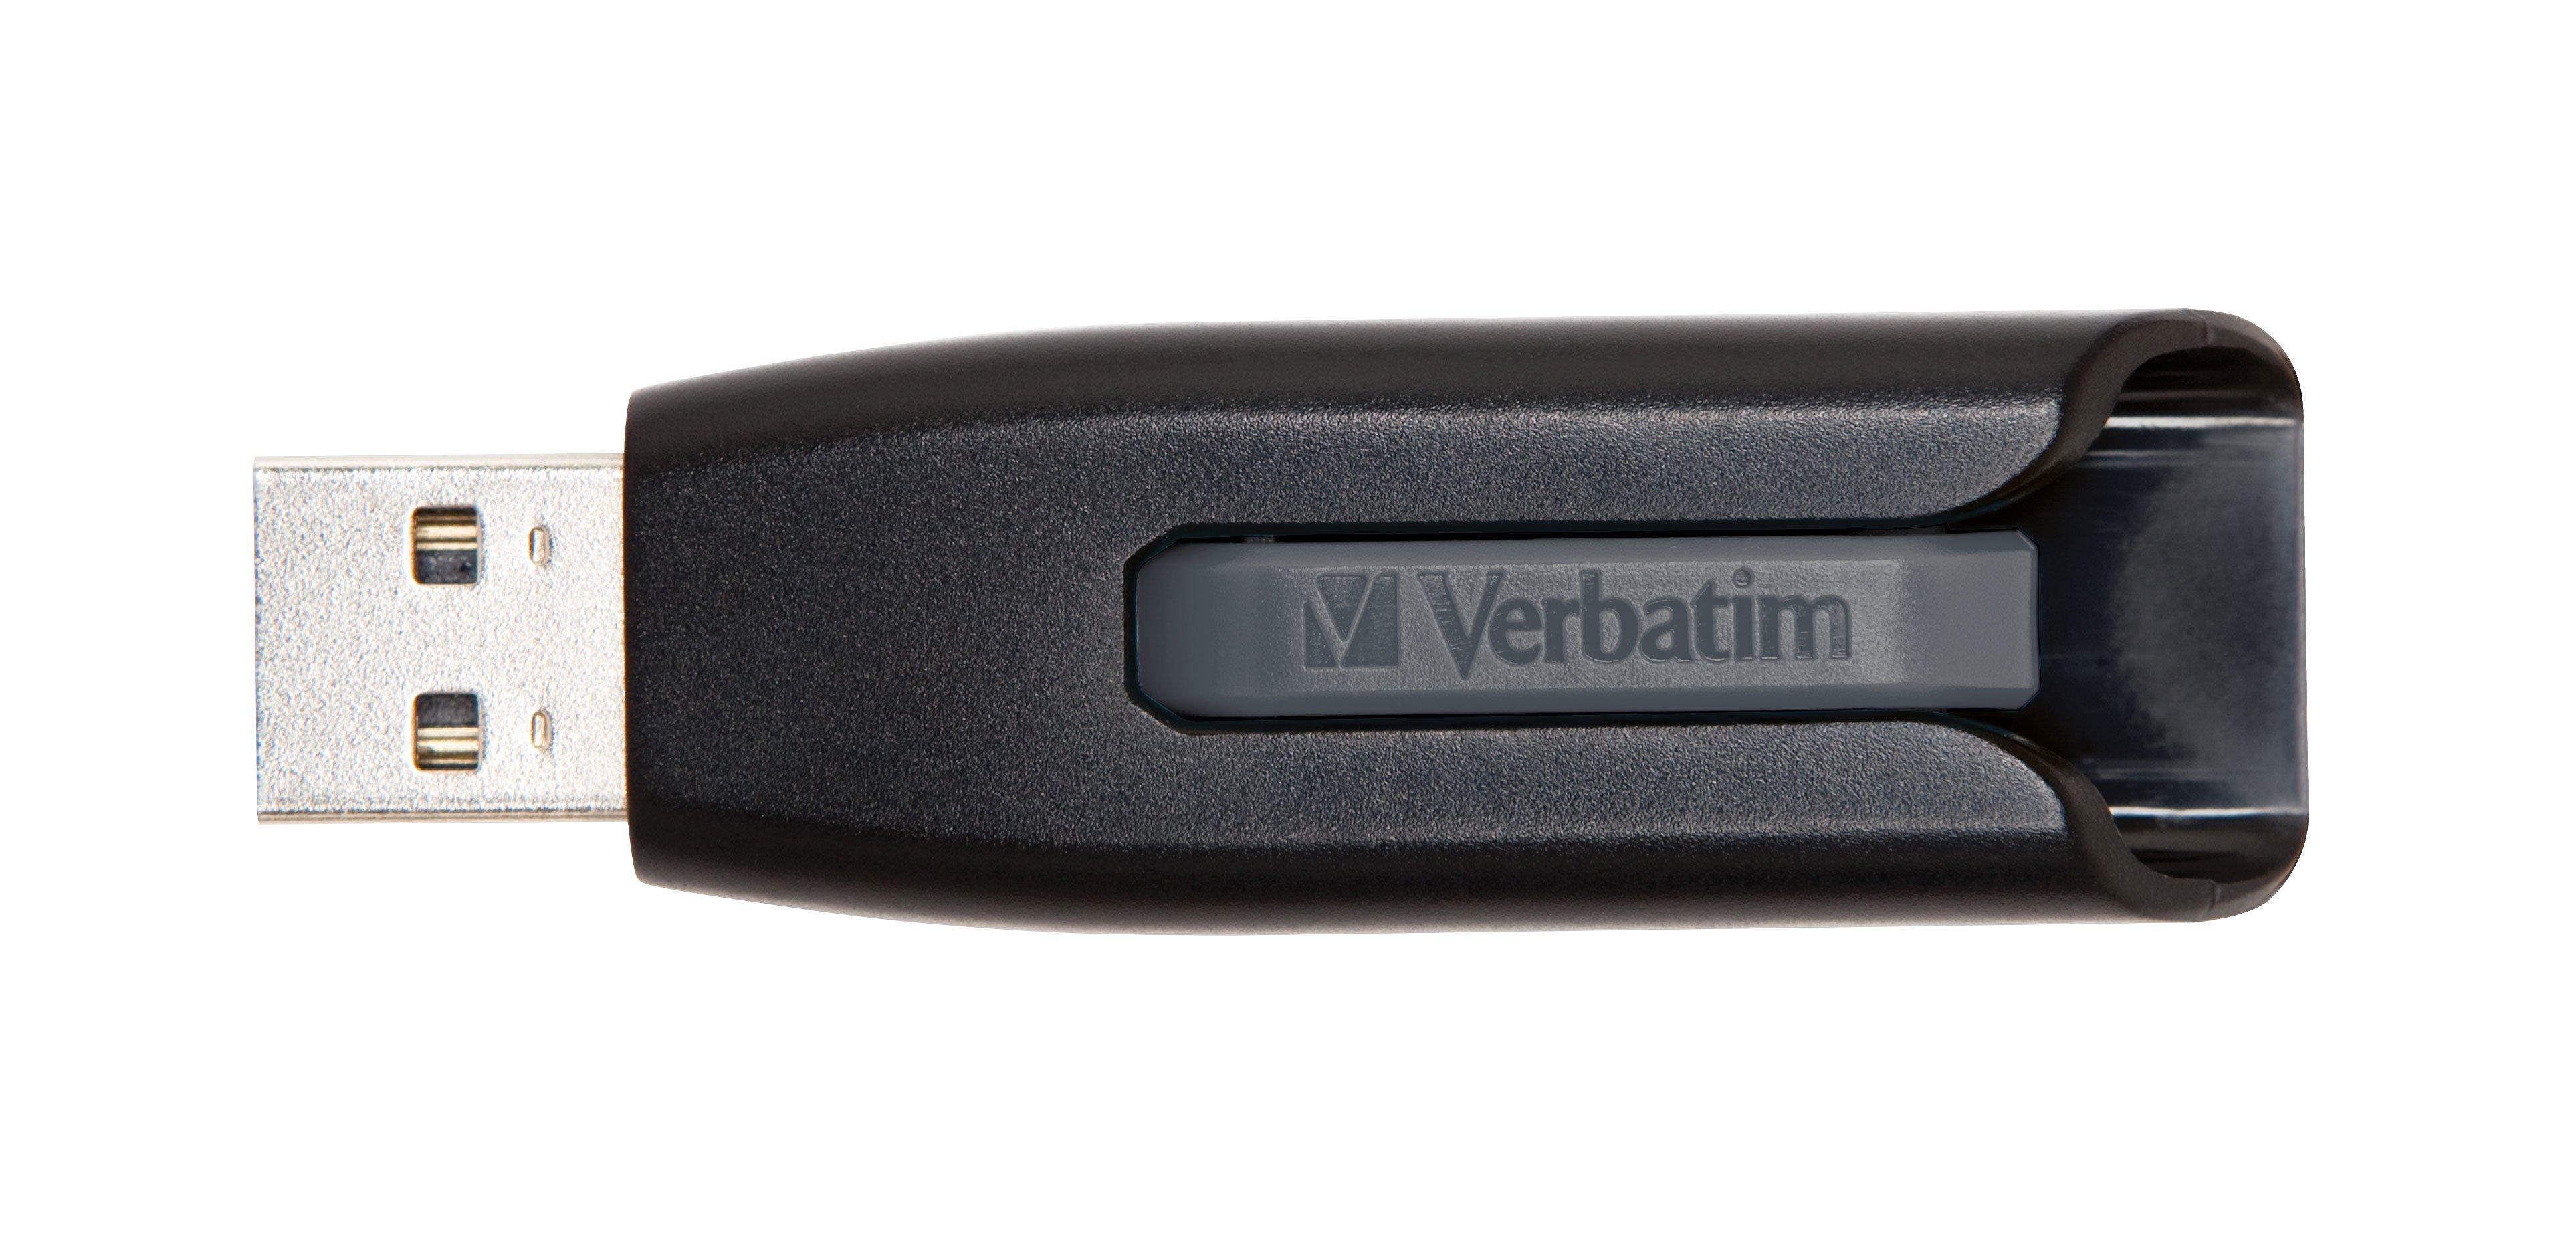 Verbatim  Verbatim V3 - Memoria USB 3.0 64 GB - Nero 